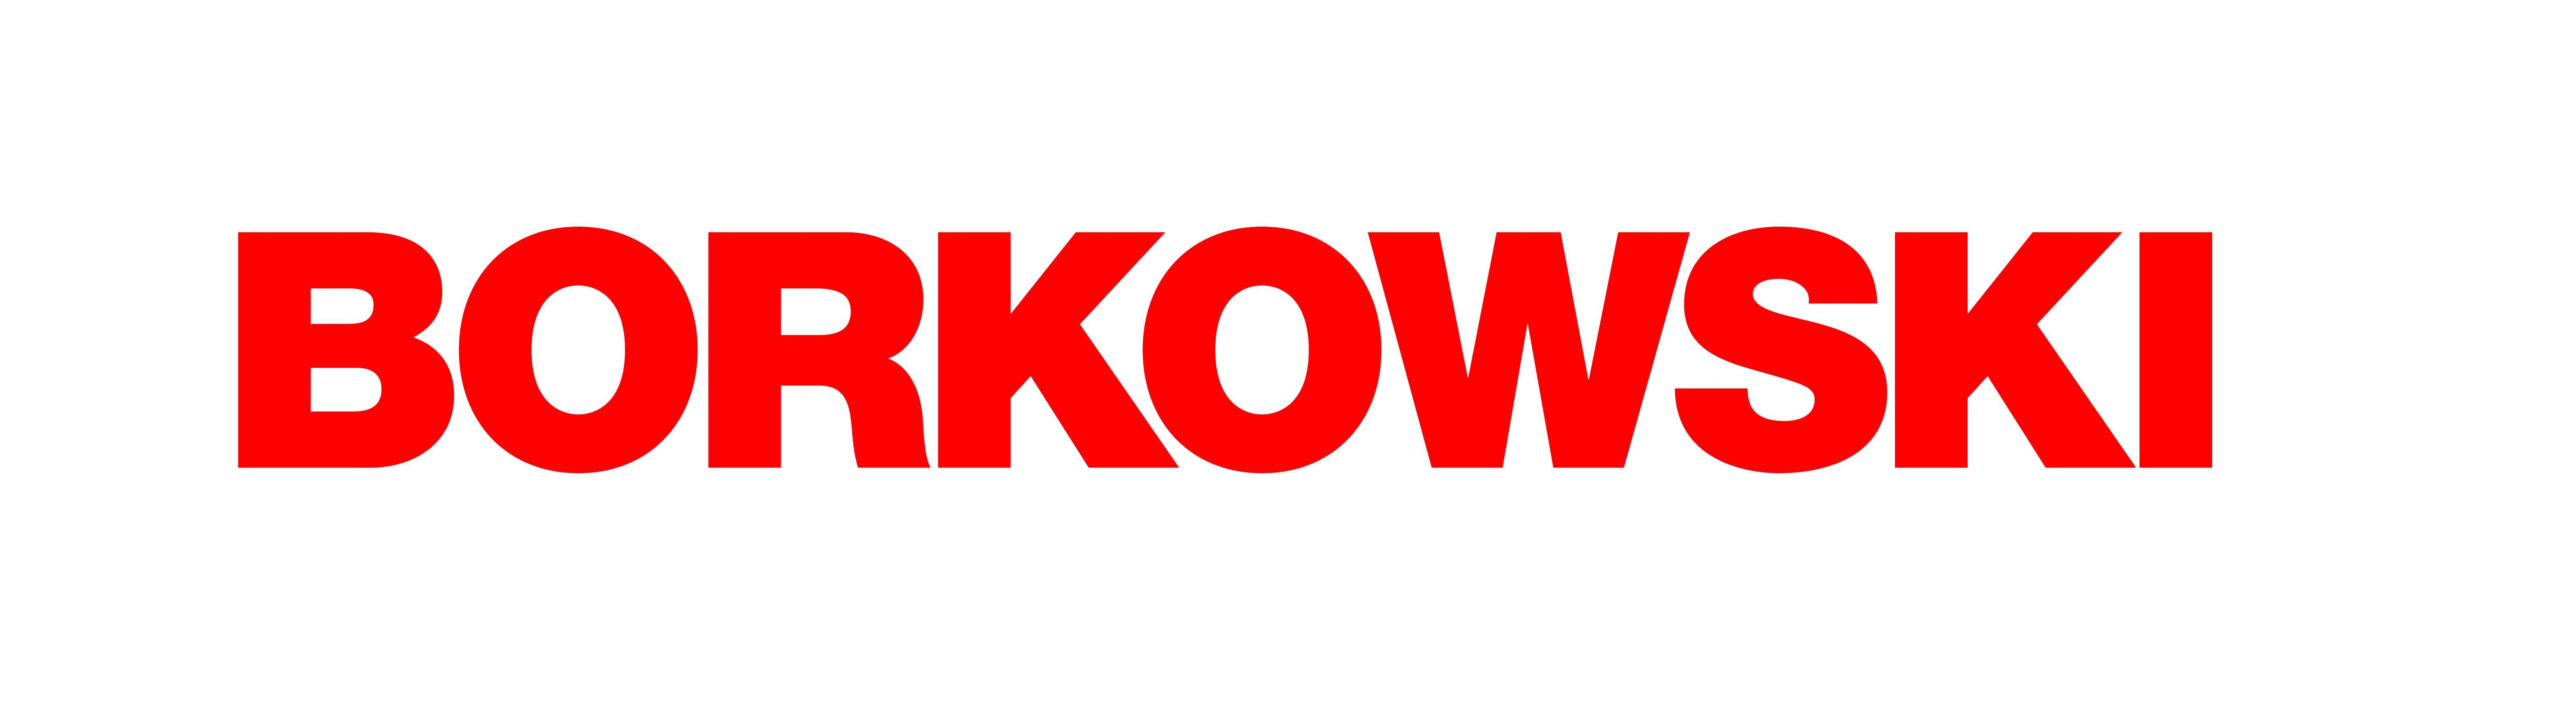 borkowski-logo